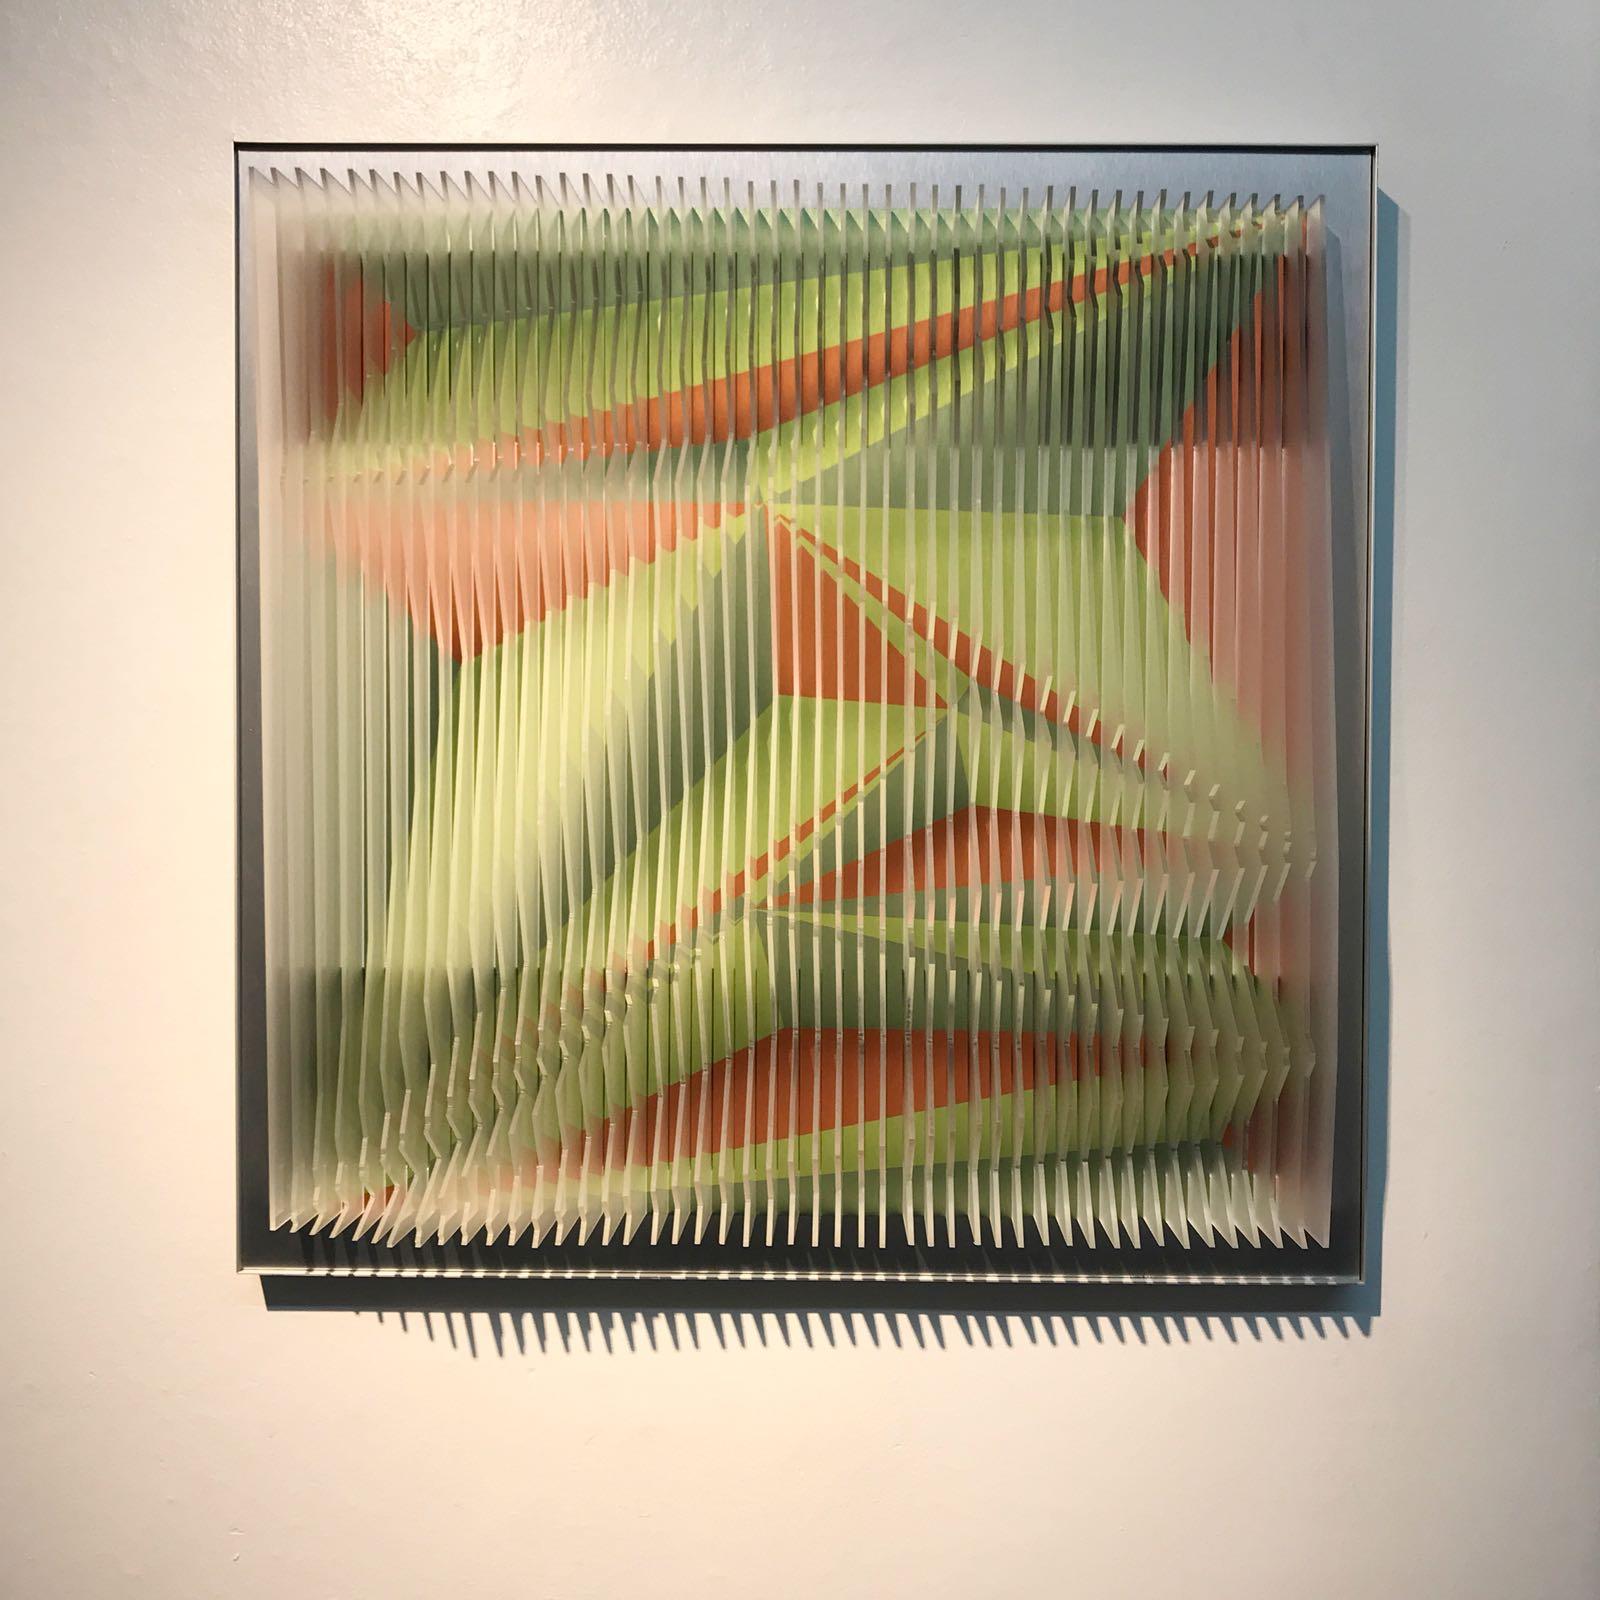 Dieses einzigartige Werk von Margulis gehört zu seinem neuesten Werk und ist Teil einer Auflage von 9 Stück. Nachdem er die Plexiglasplatten auf den Aluminiumkern montiert hat, überzieht er die Vorderseite der Platten teilweise mit Acrylfarben